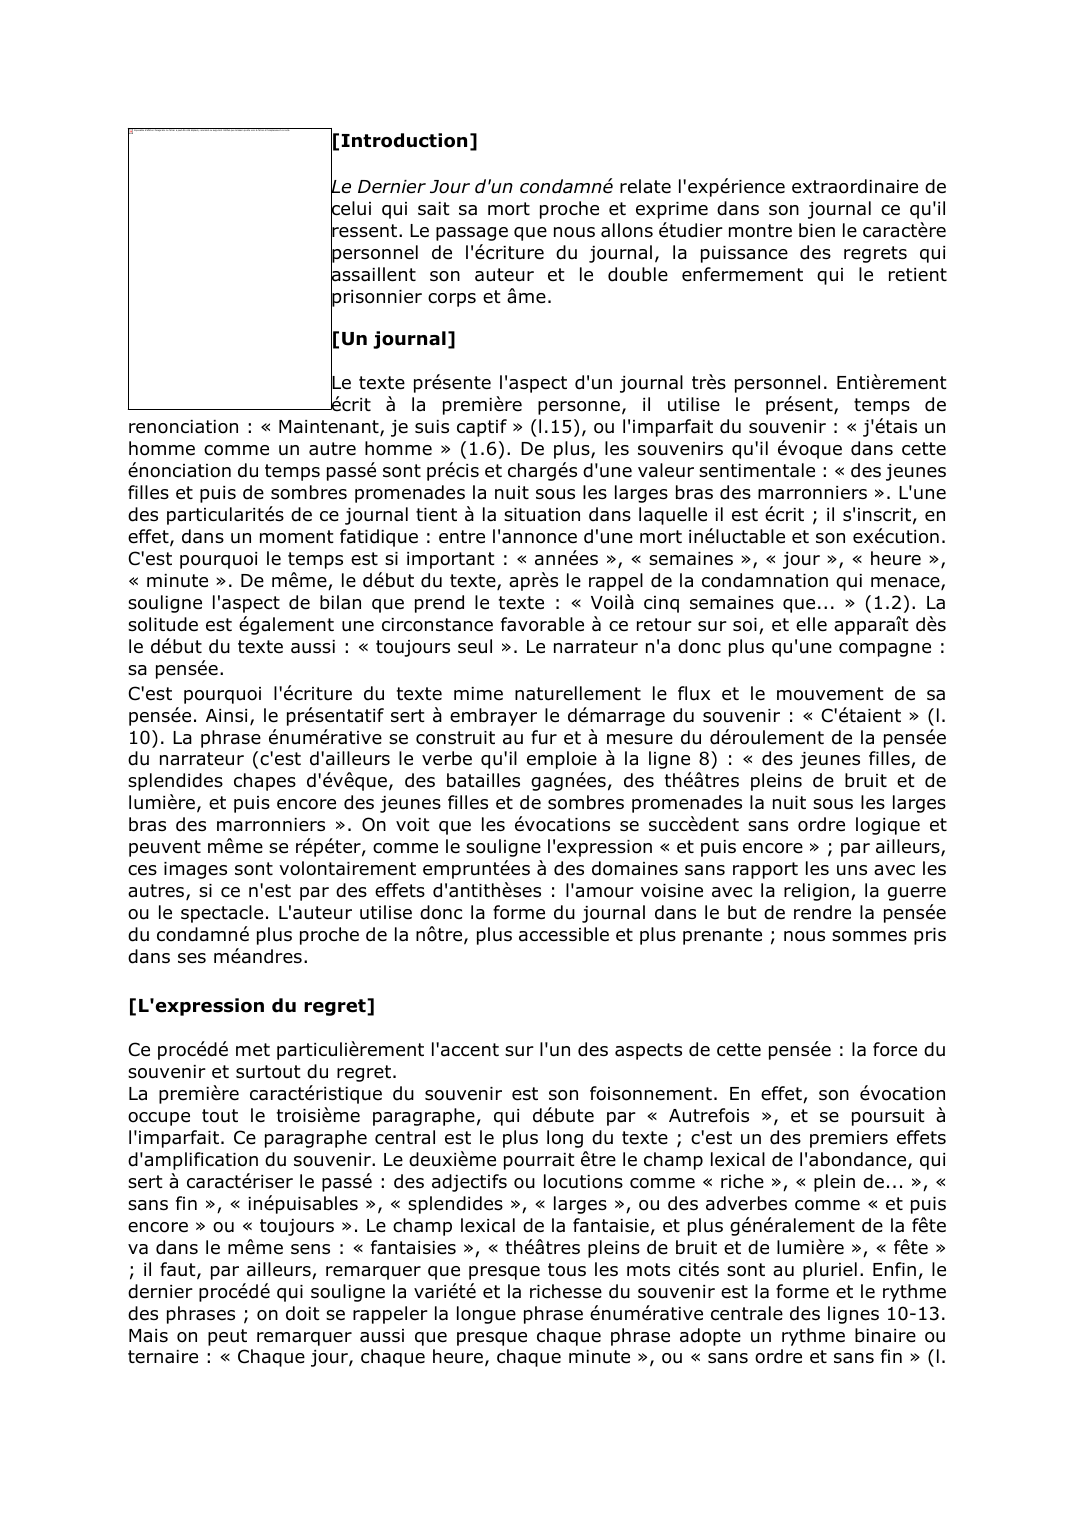 Prévisualisation du document Le Dernier Jour d'un condamné: « Maintenant, je suis captif » (l.15) - Hugo